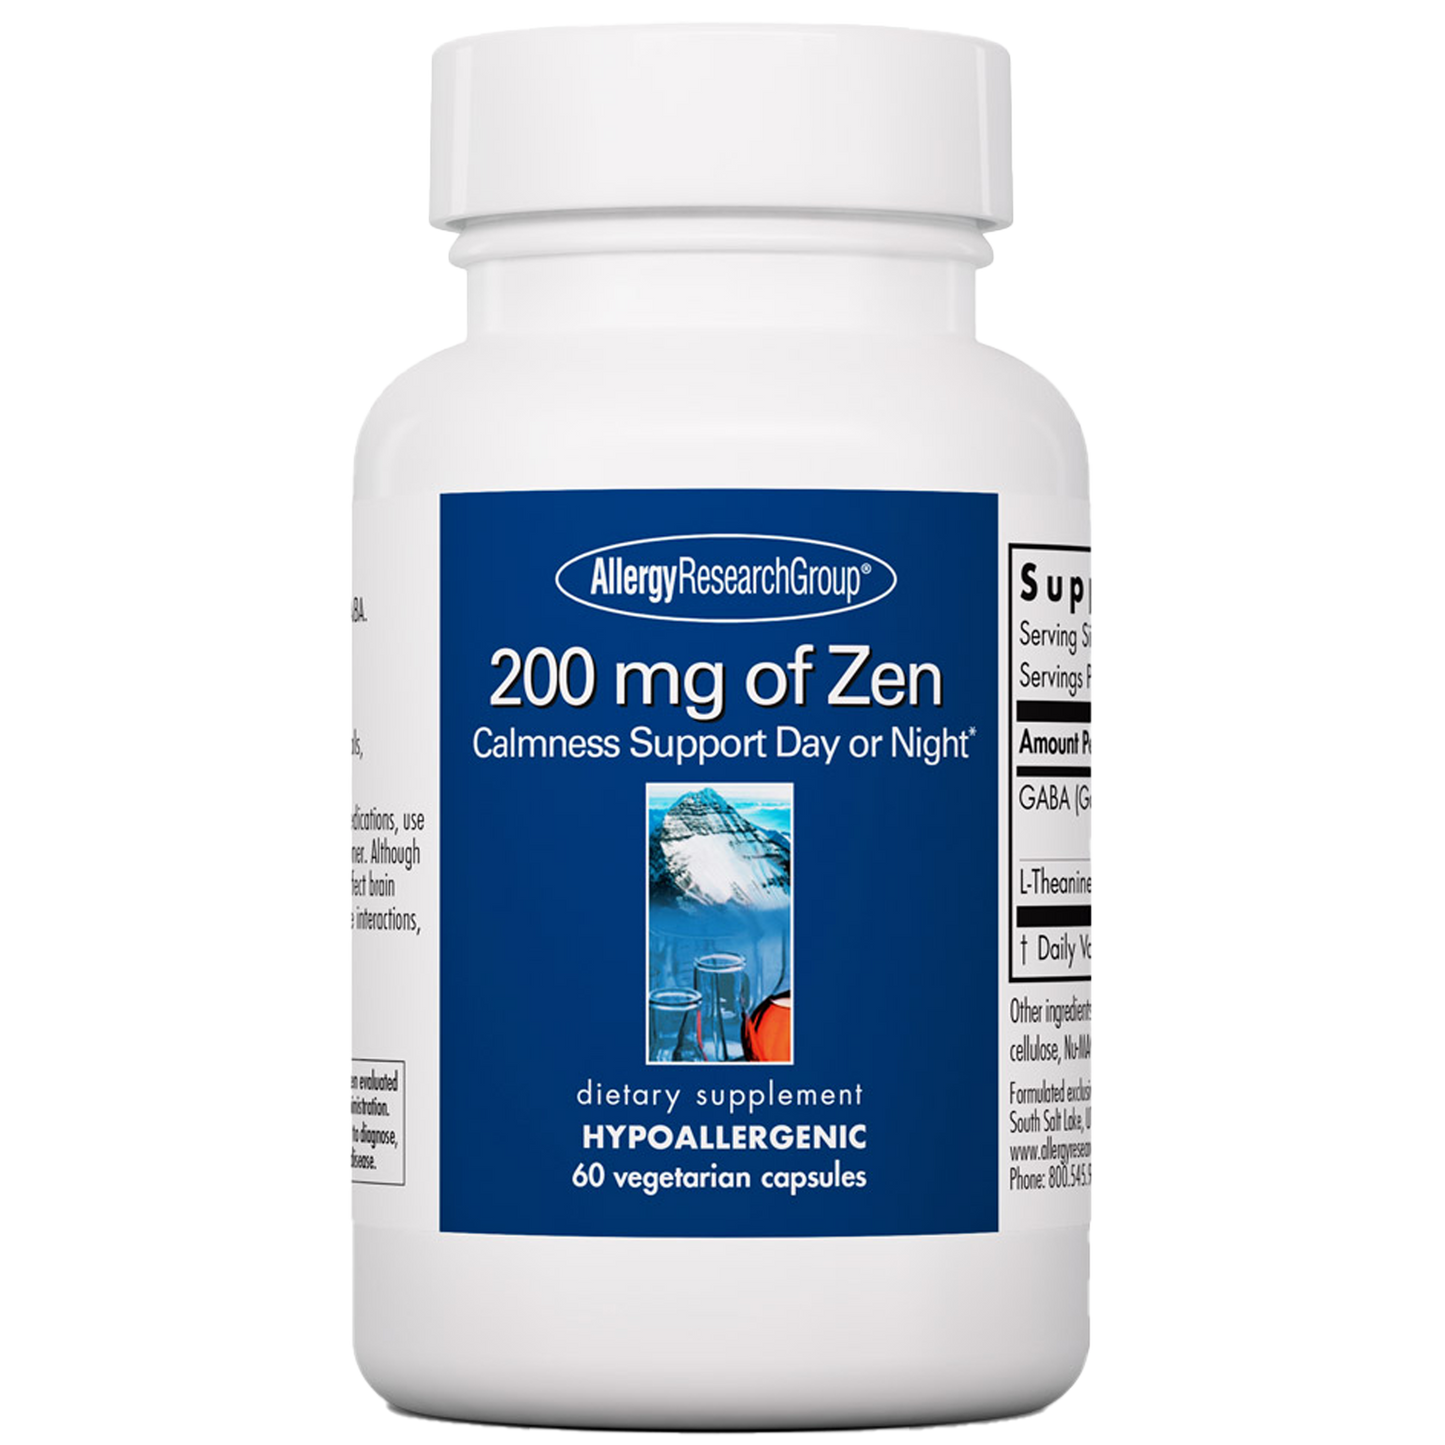 200 mg of Zen